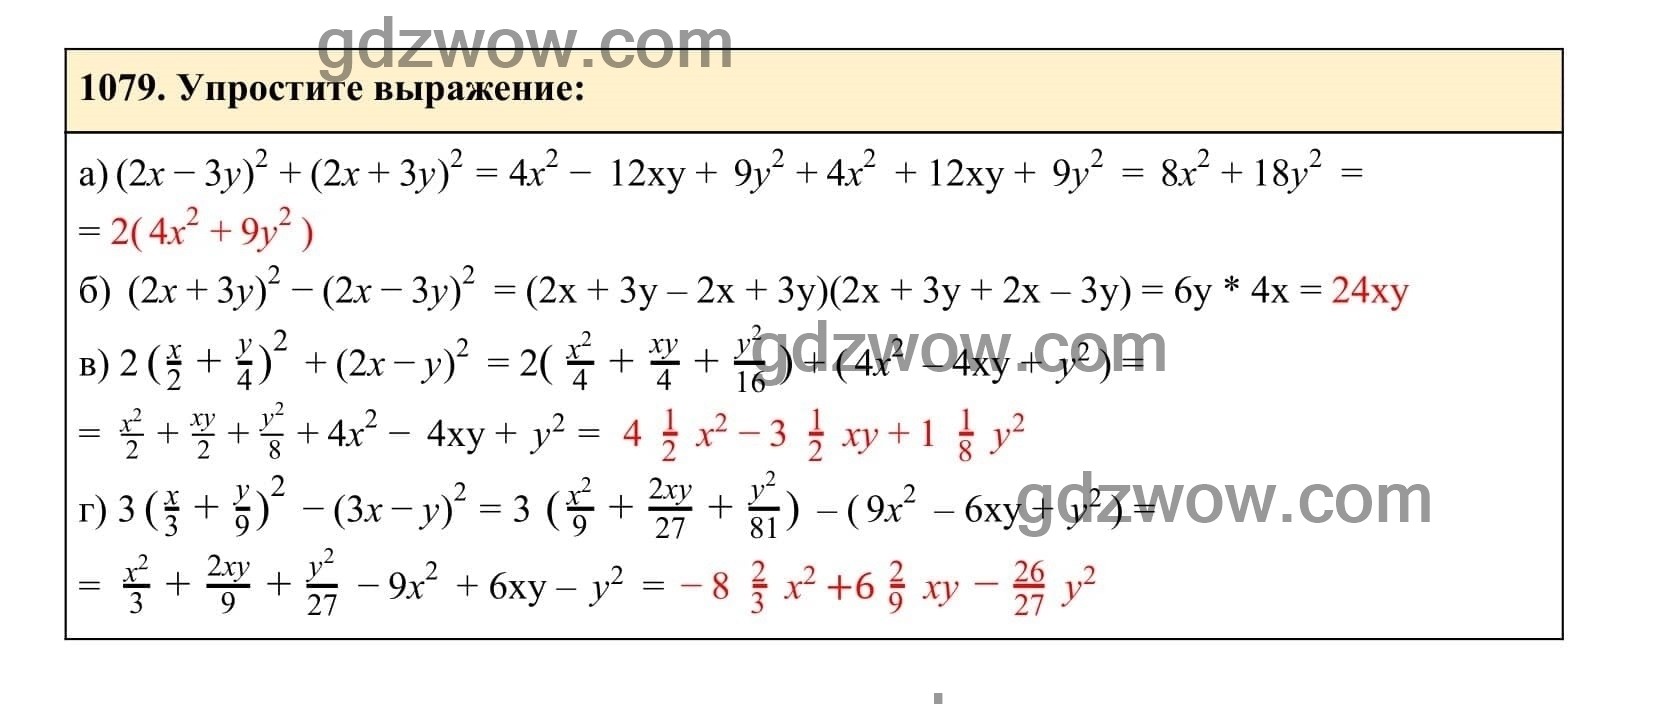 Упражнение 1079 - ГДЗ по Алгебре 7 класс Учебник Макарычев (решебник) - GDZwow